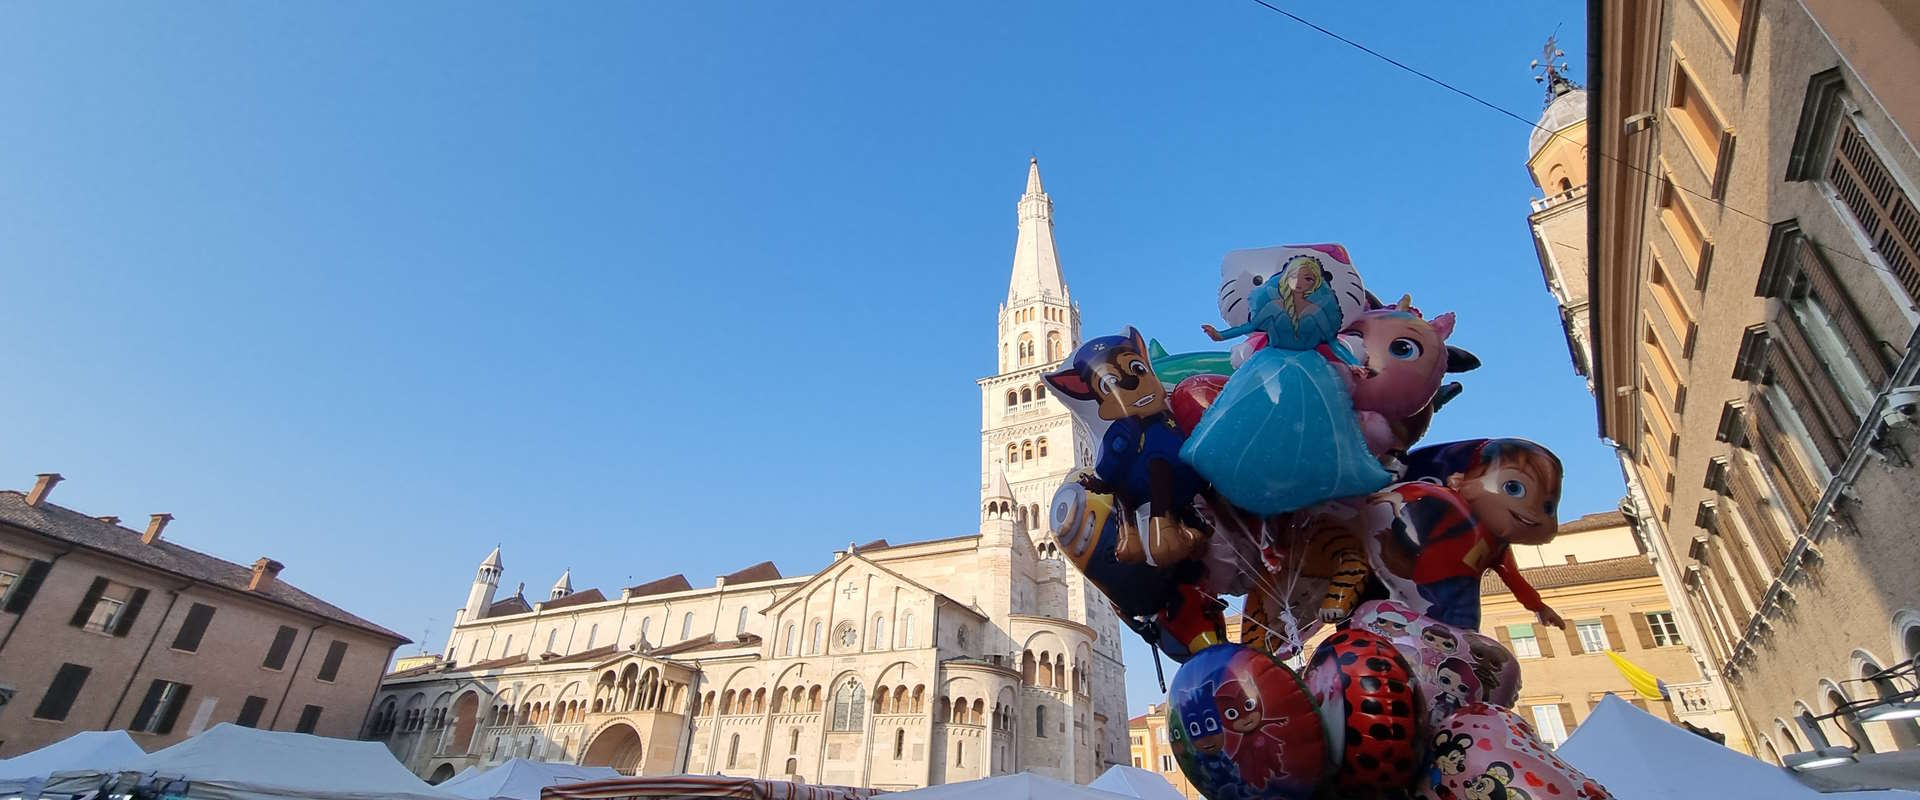 Modena festeggia il Patrono